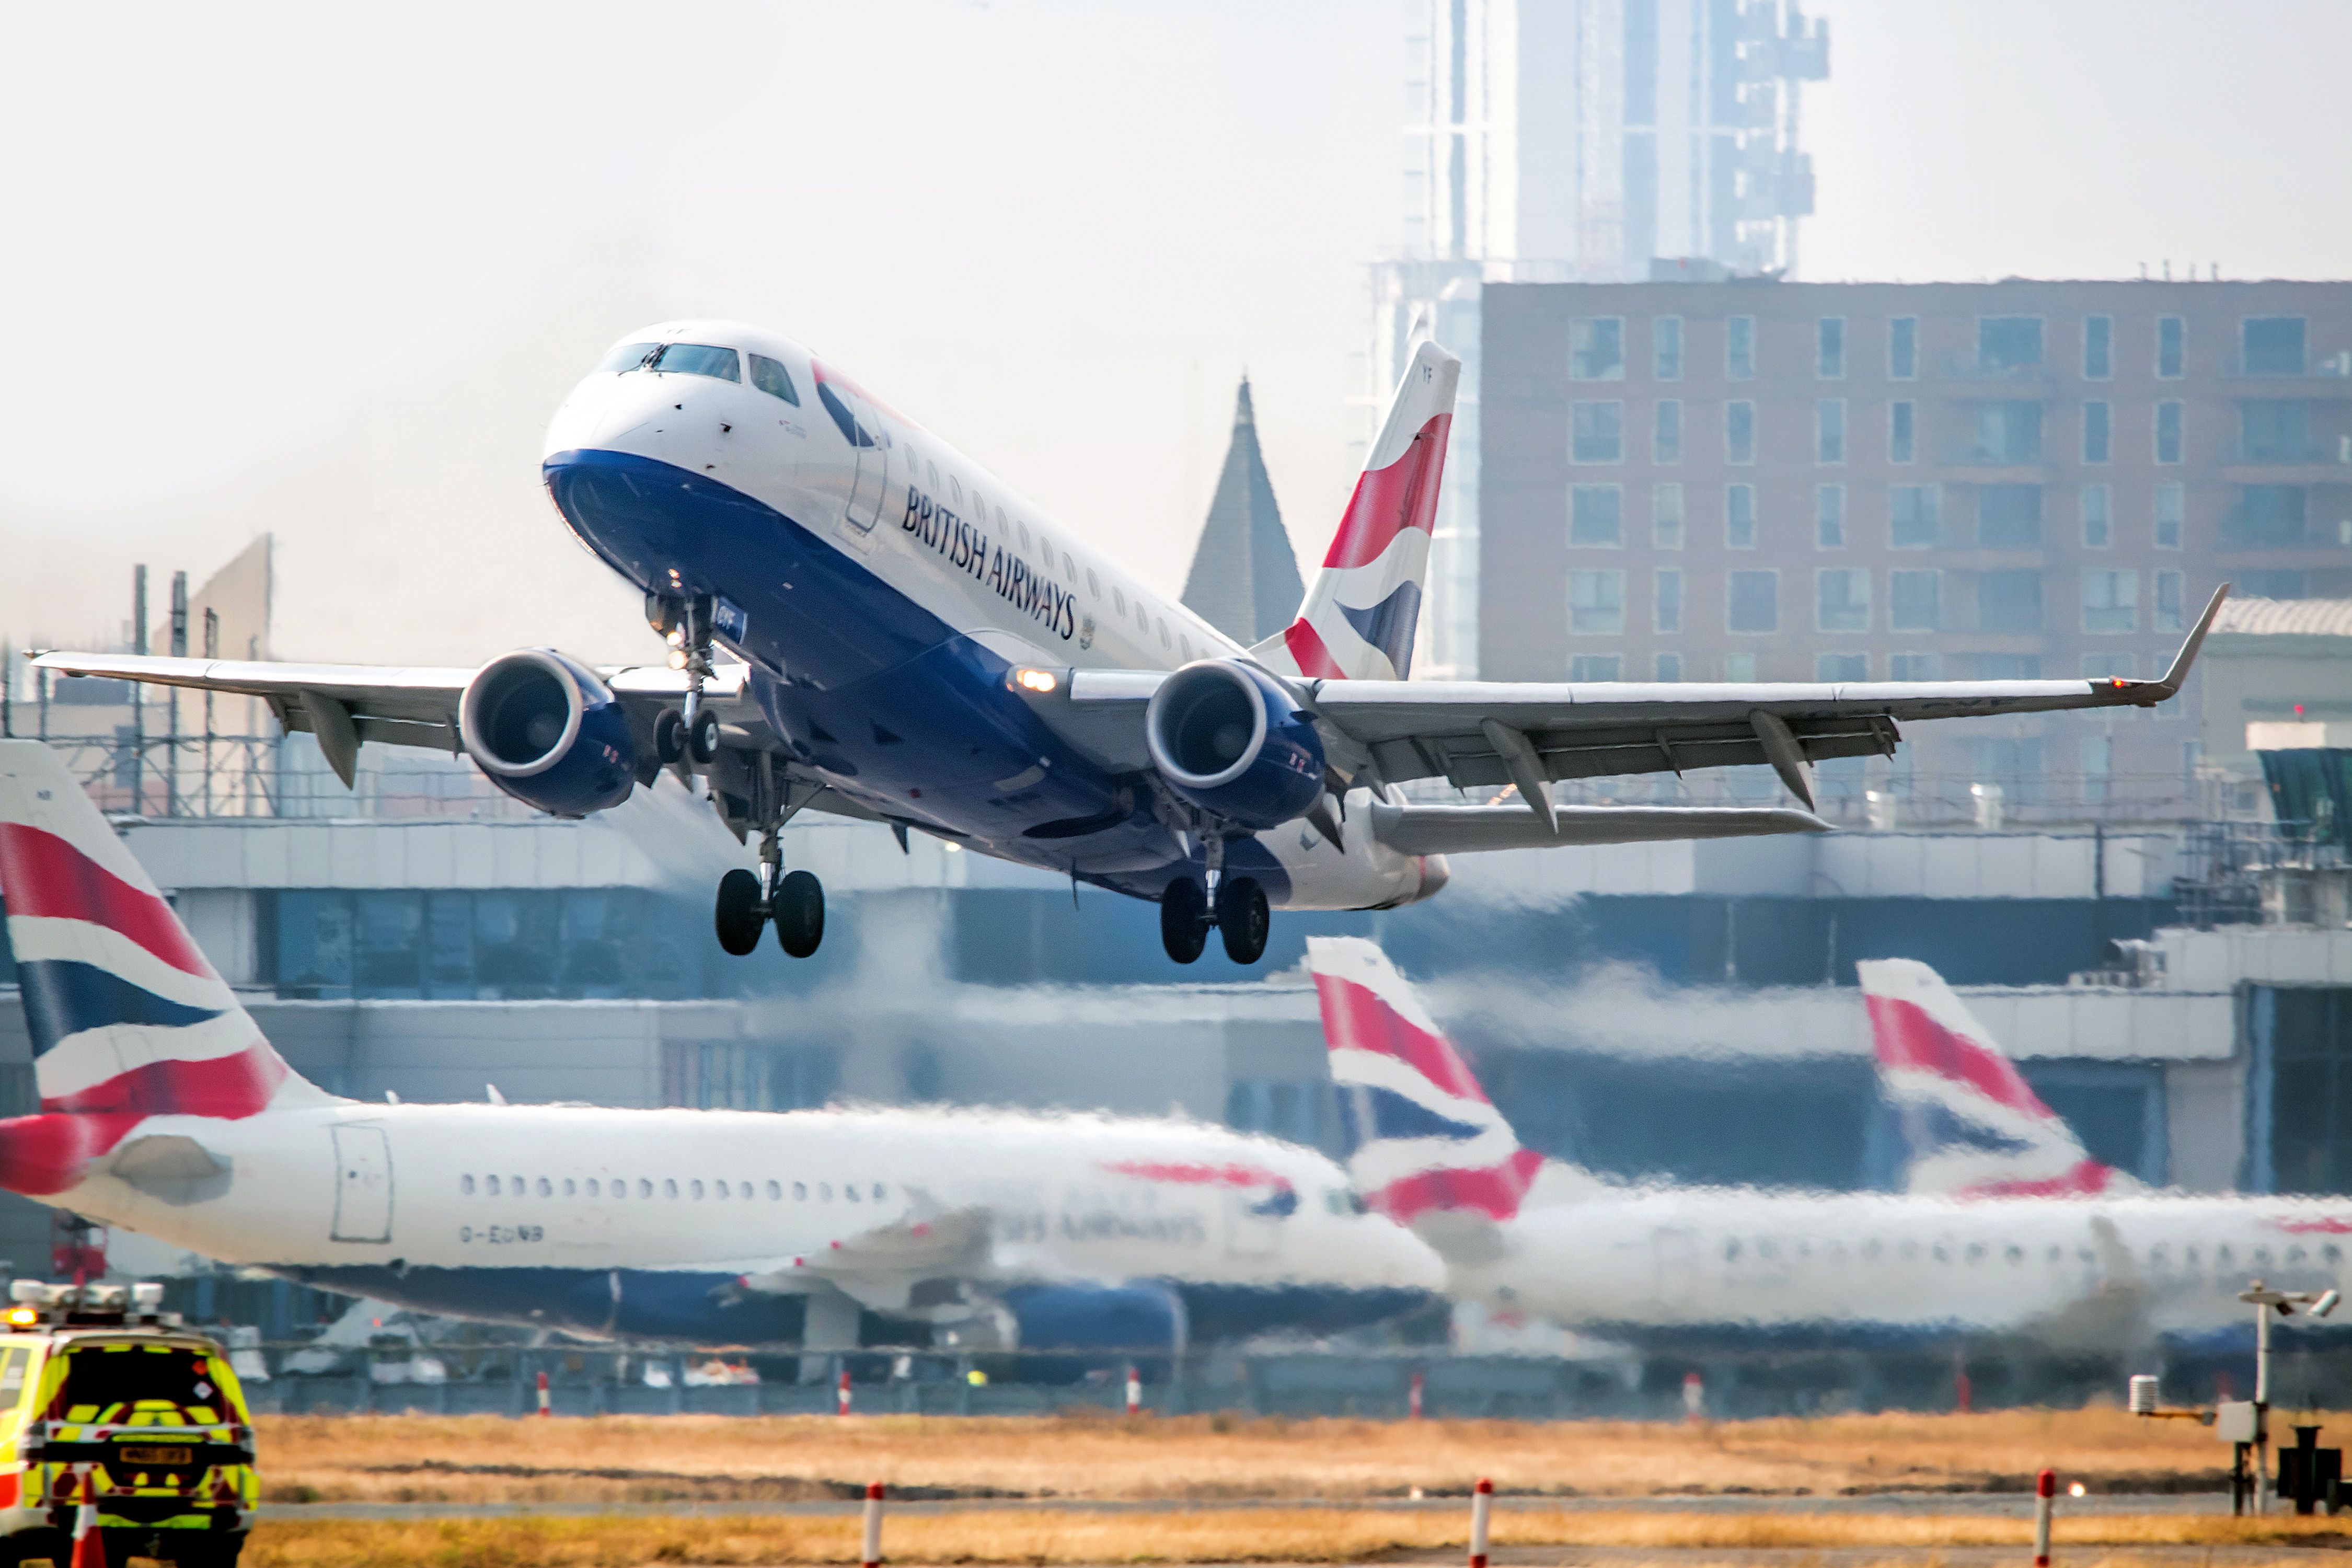 A British Airways jet taking off